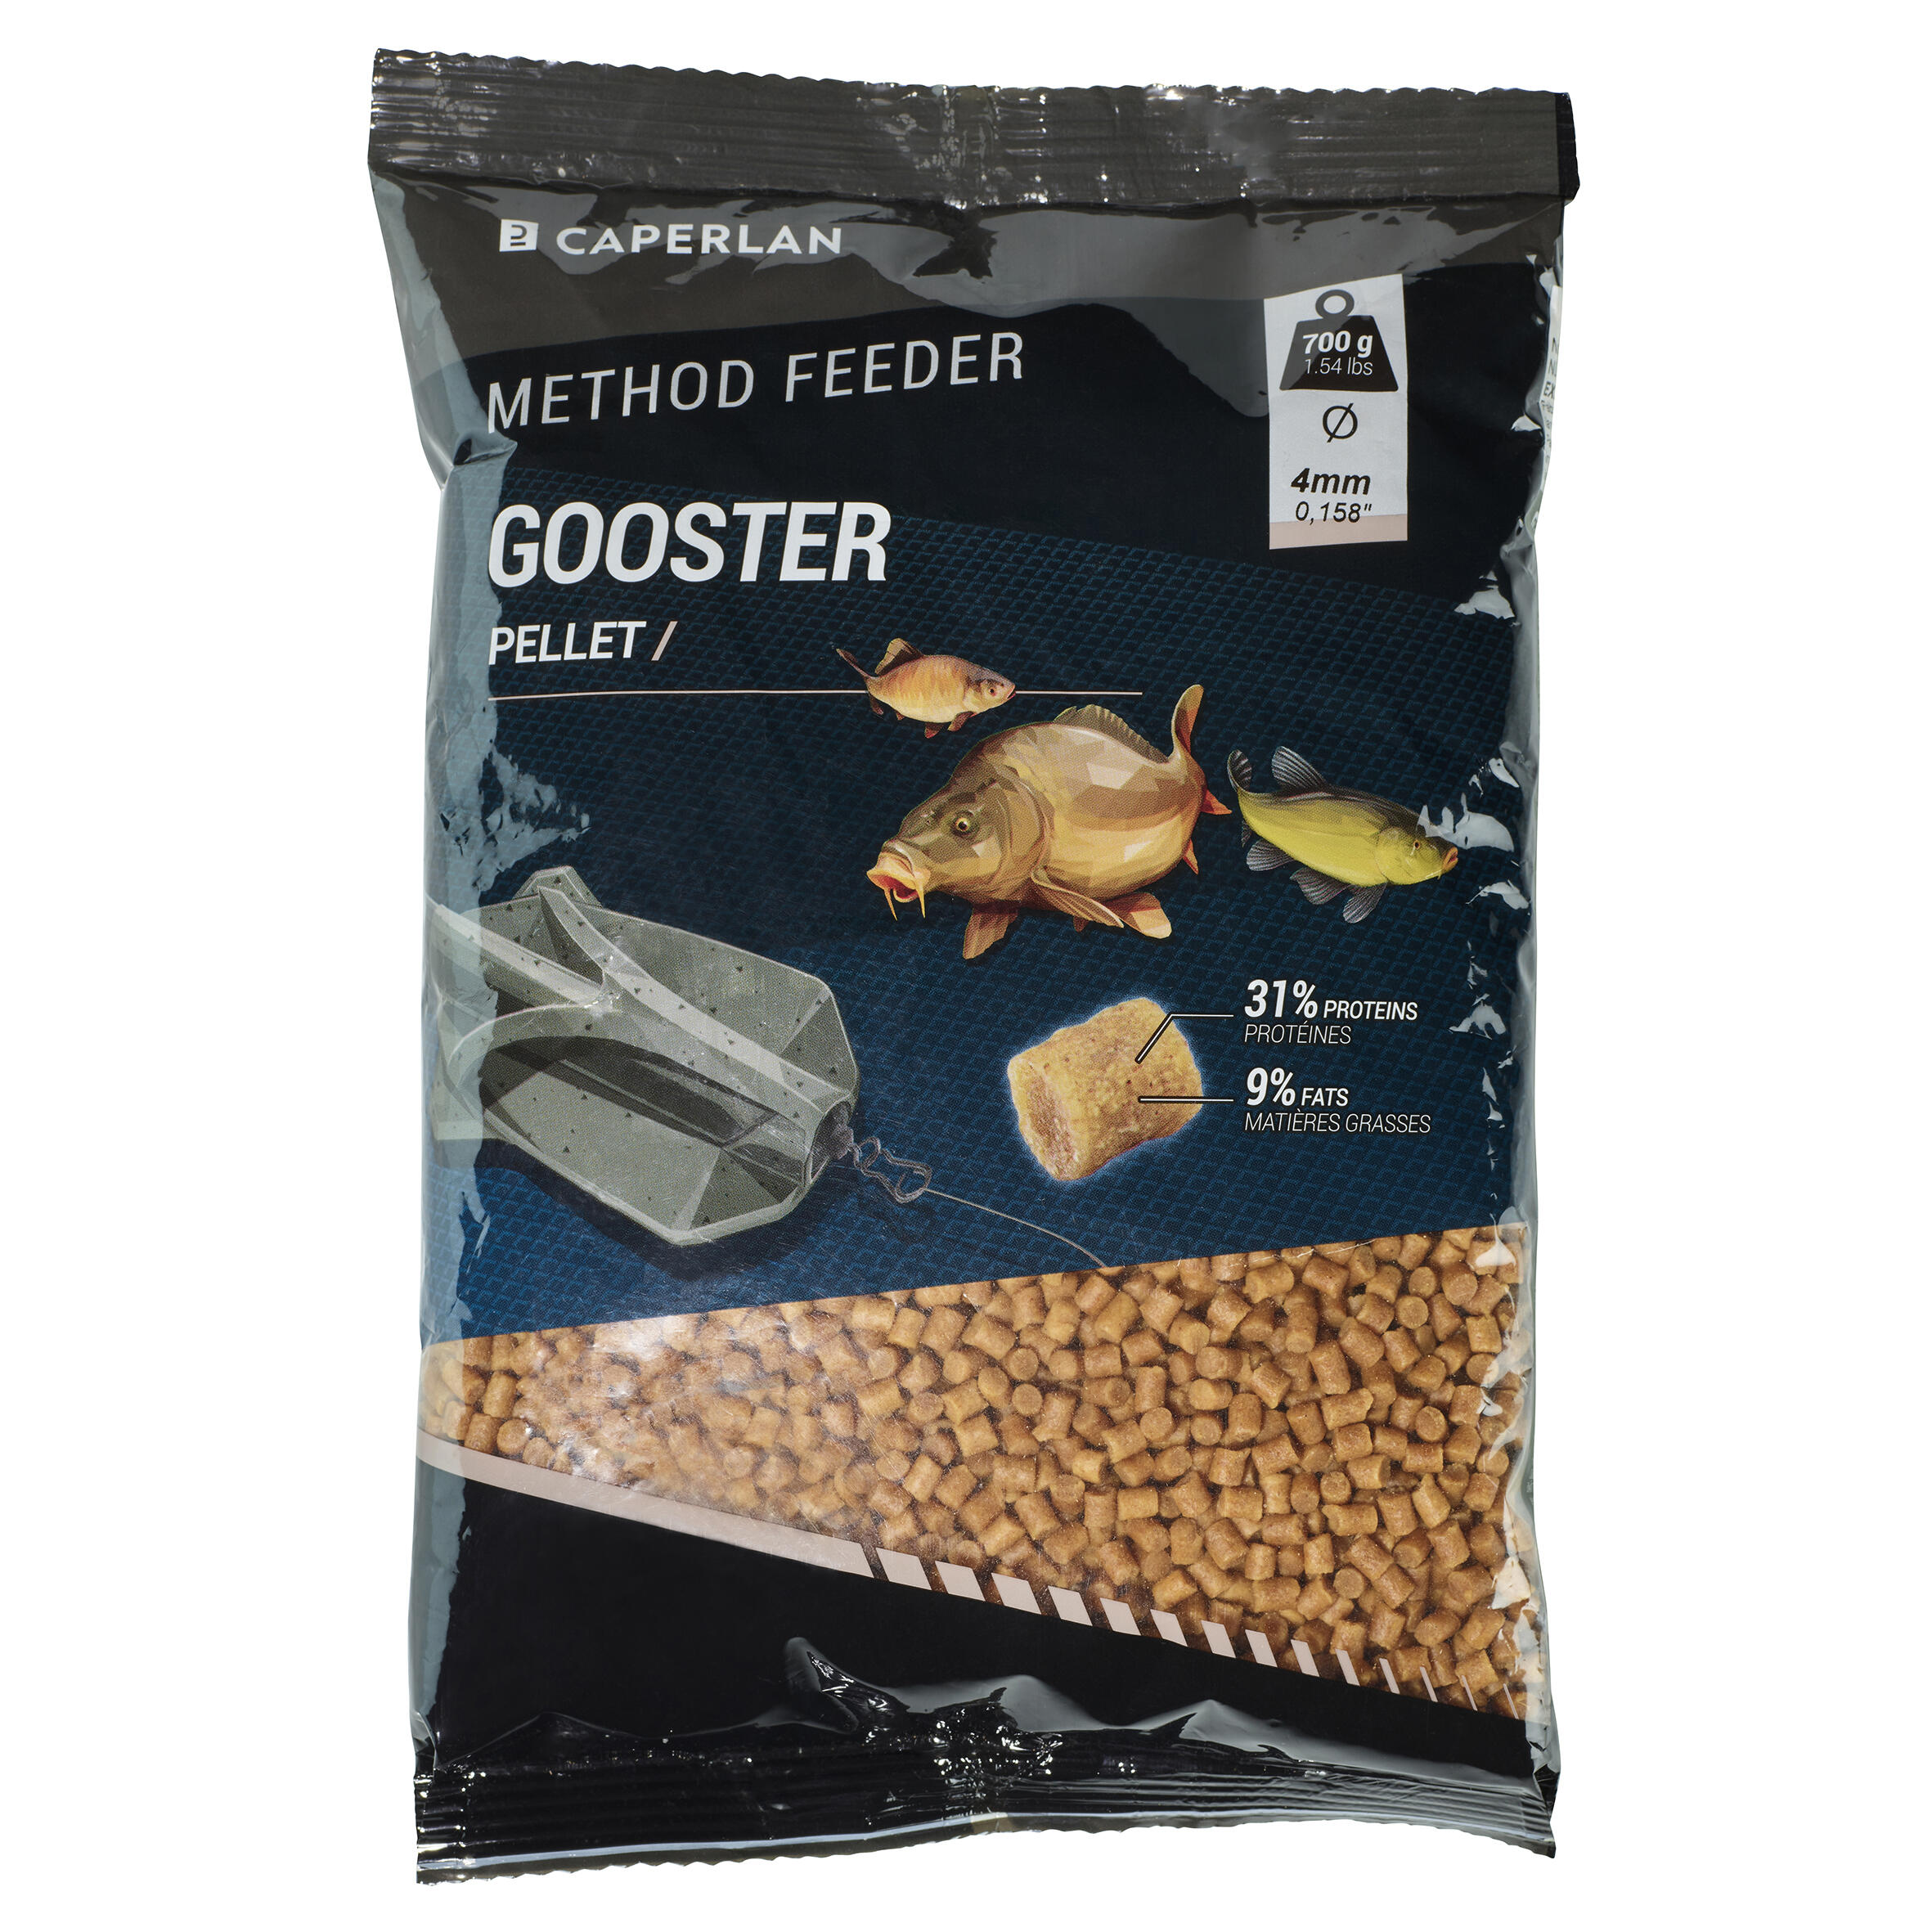 4 mm Gooster pellet feeder for feeder method fishing. 3/3